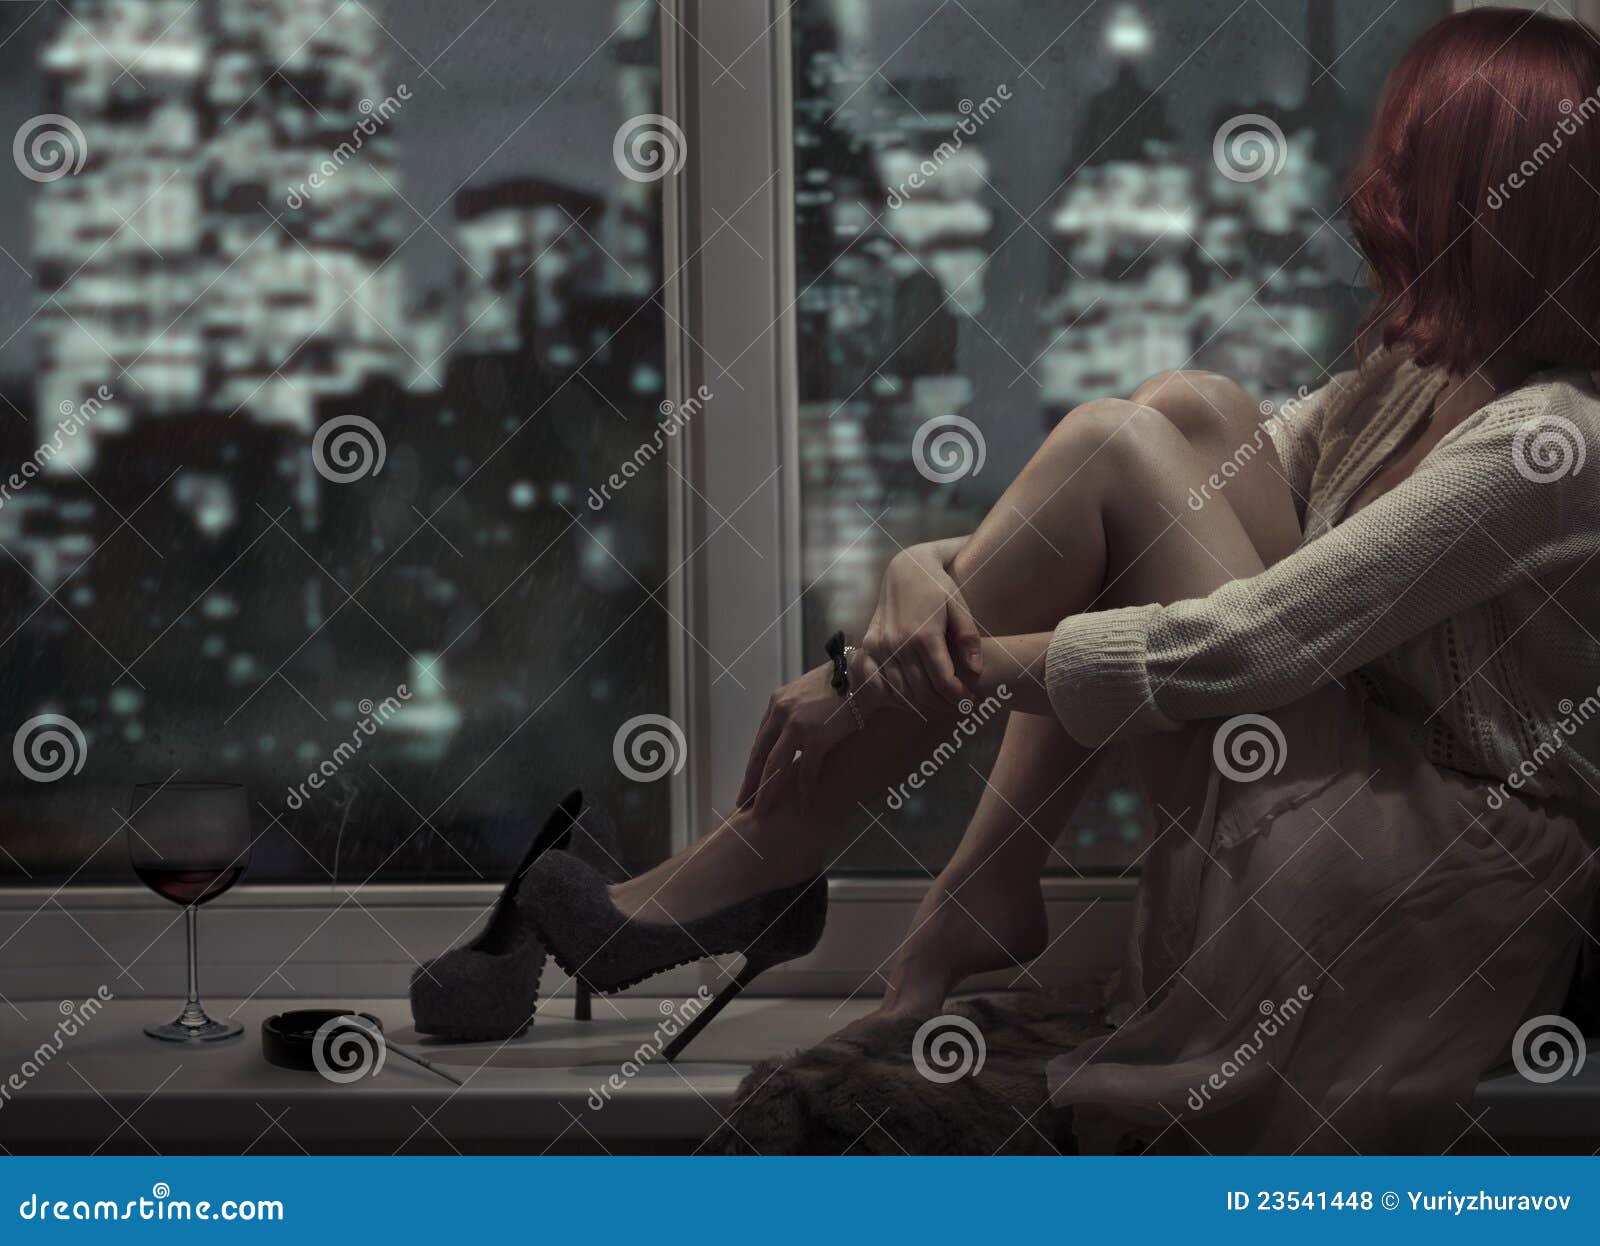 alone beautiful woman sitting on window